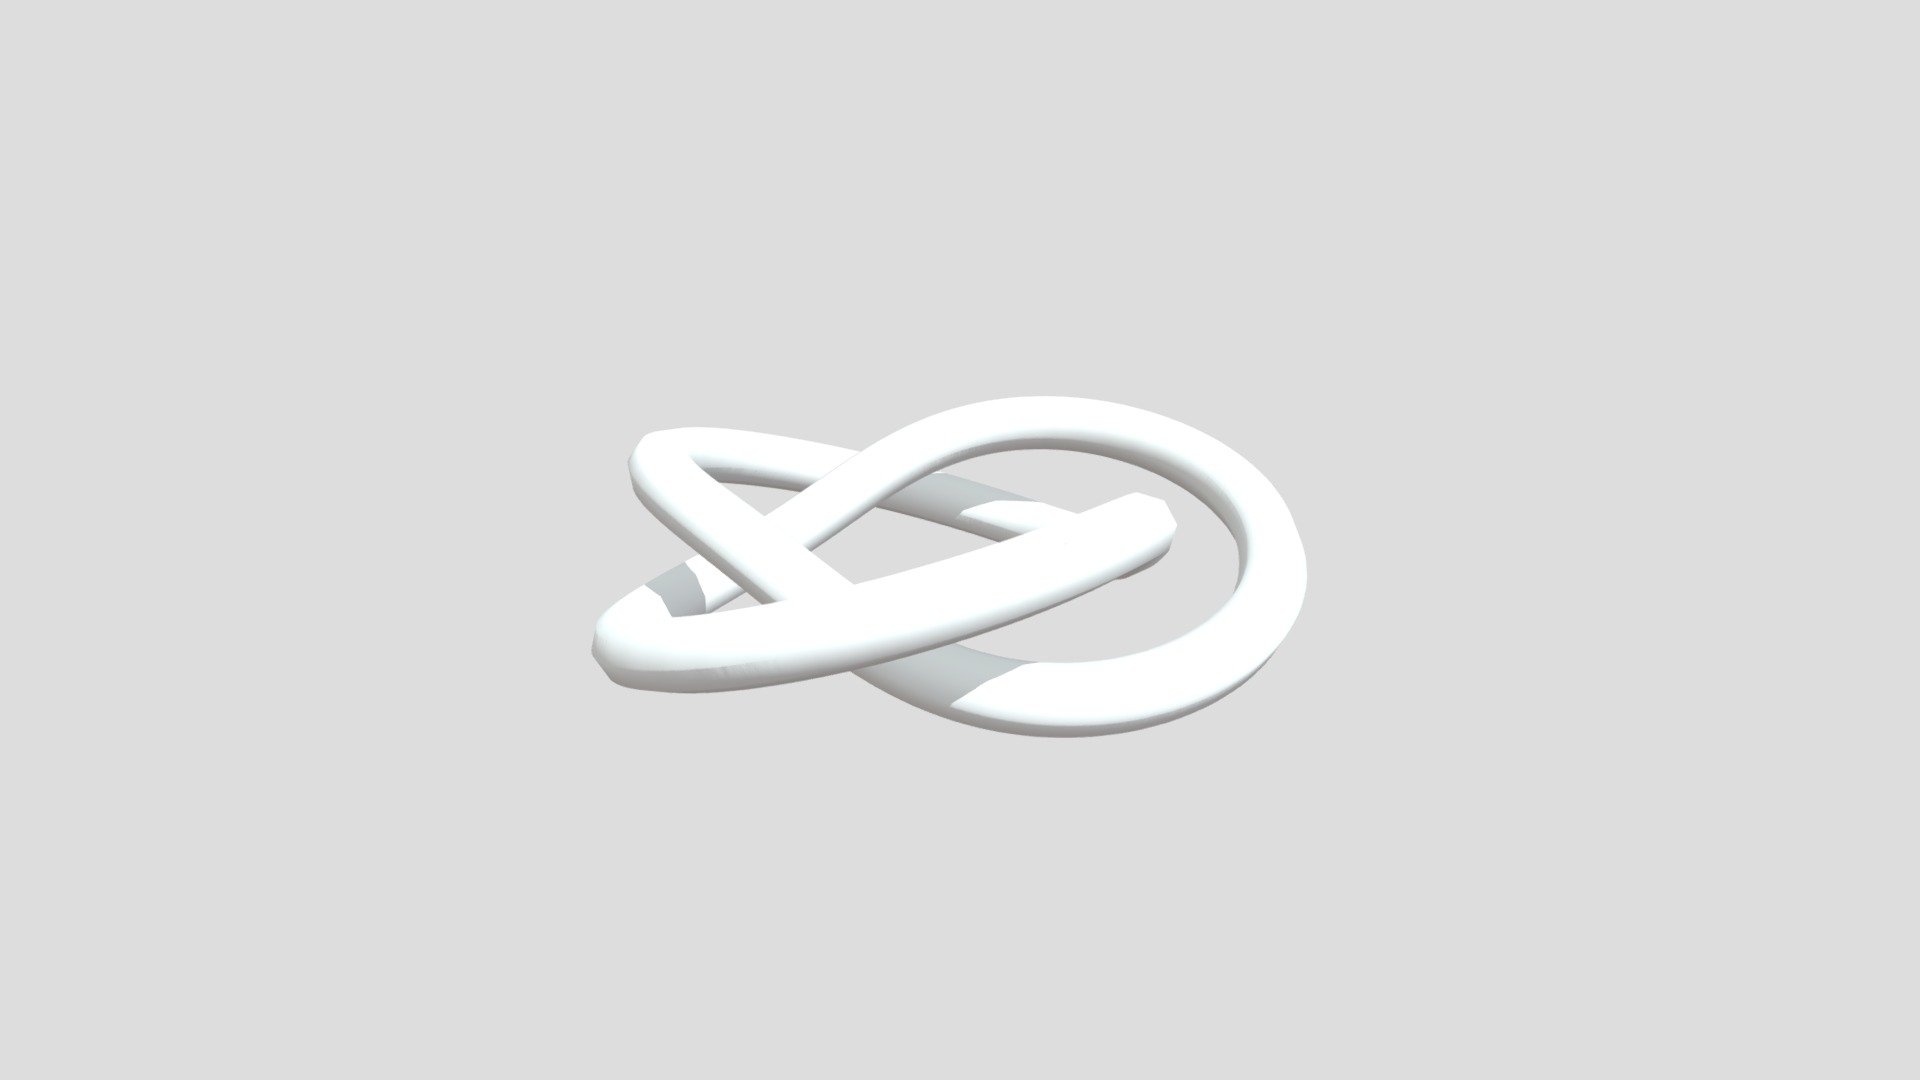 3,2 Torus Knot - 3,2 Torus Knot - Download Free 3D model by crespi.f 3d model